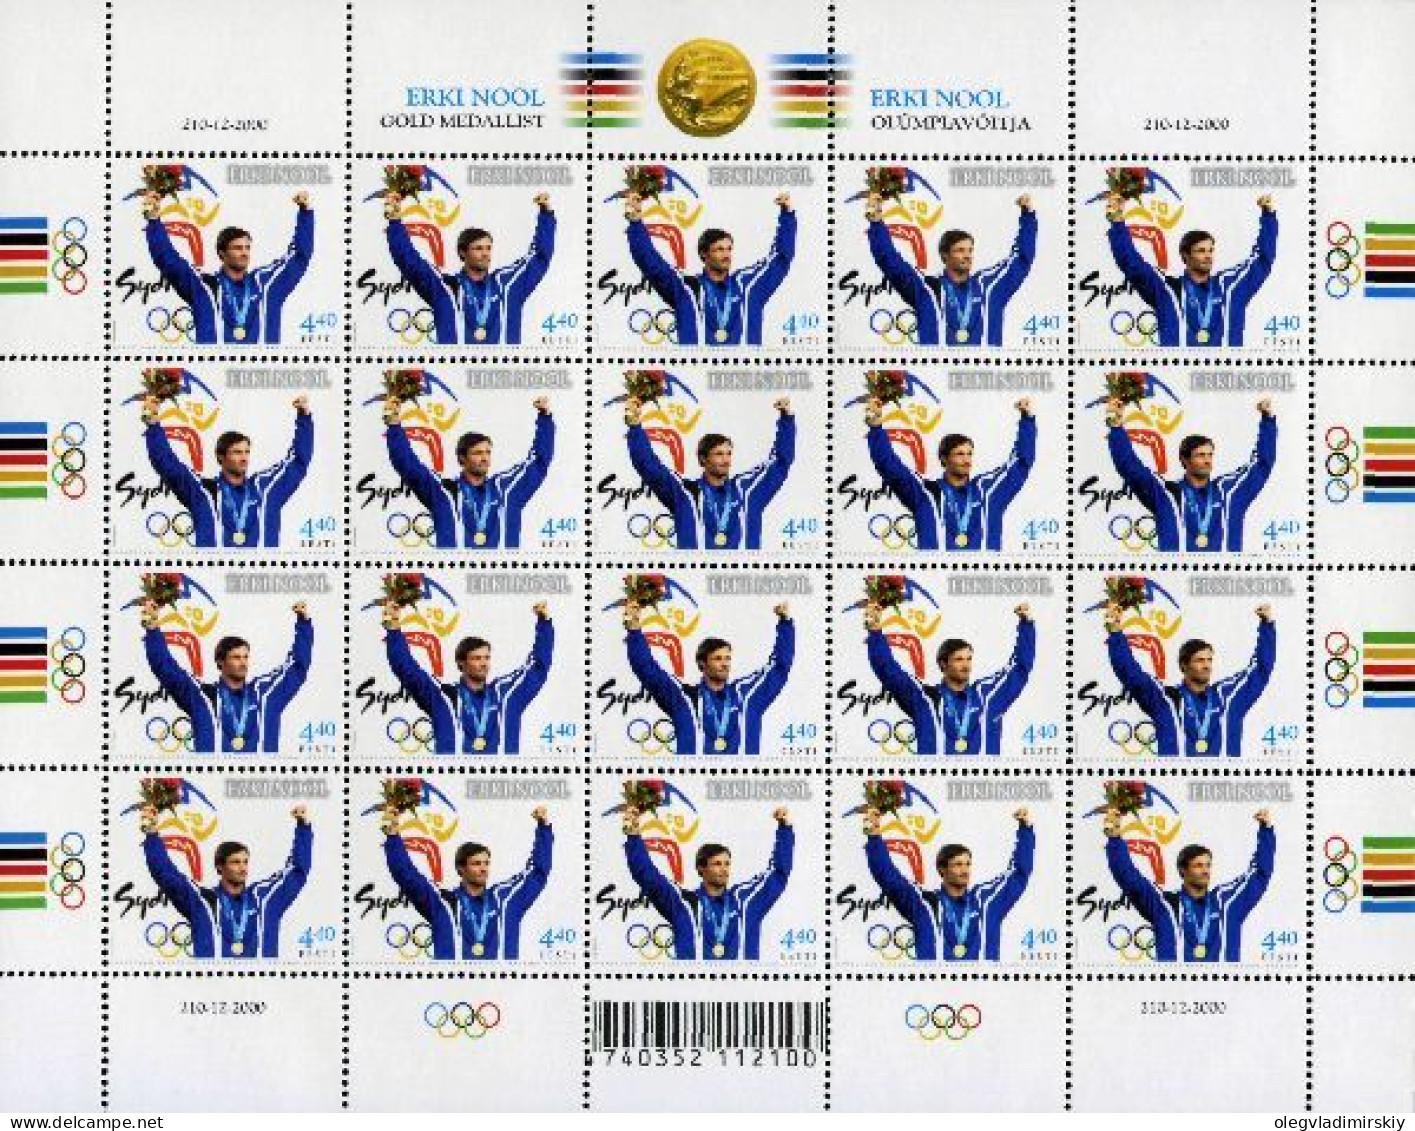 Estonia Estland Estonie 2001 Olympic Champion Erki Nool Sydney Summer Olympics Sheetlet MNH - Eté 2000: Sydney - Paralympic